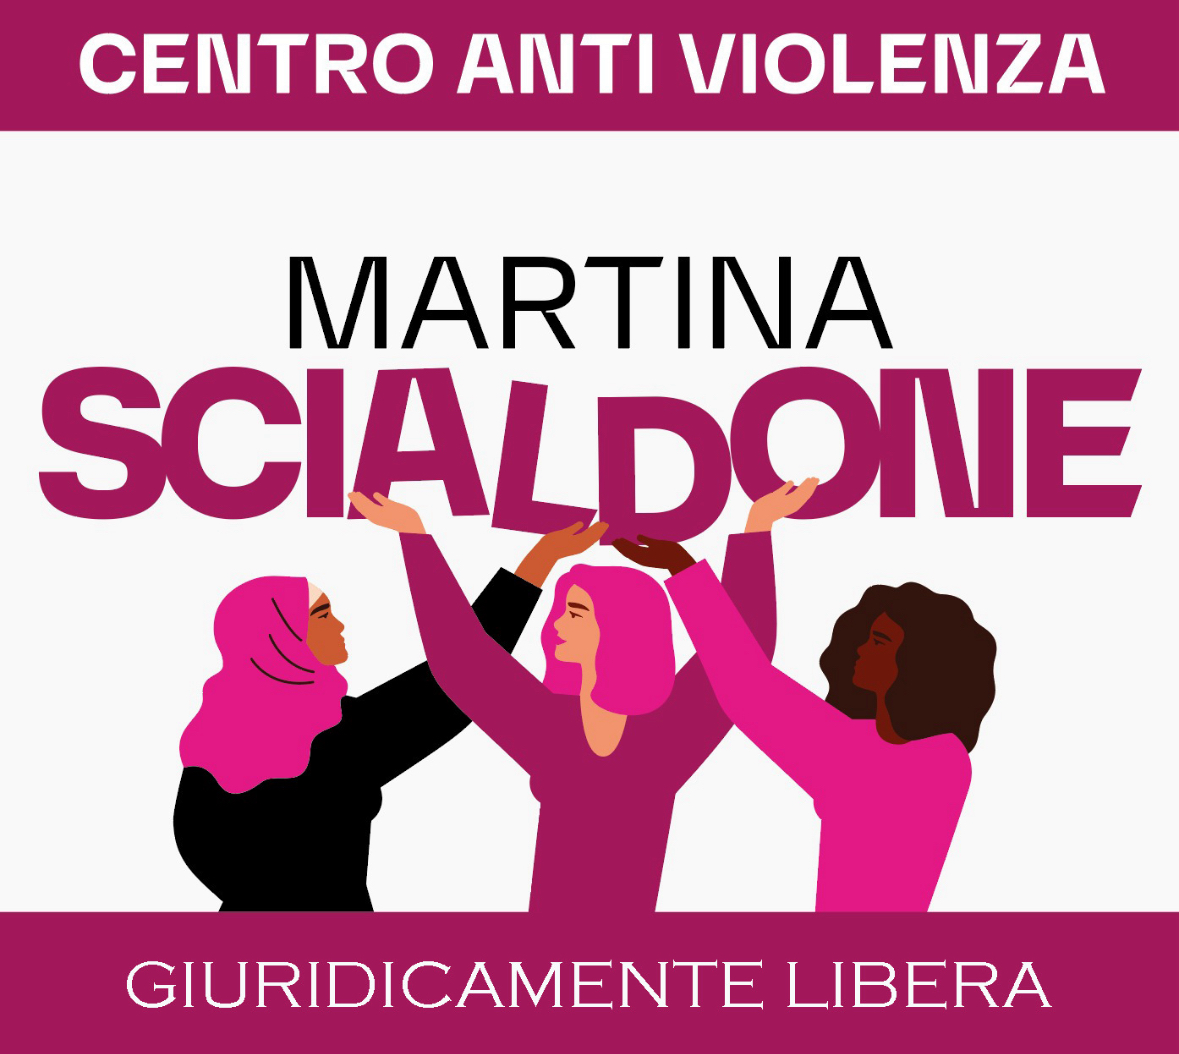 Giuridicamete libera, centro antiviolenza a Roma